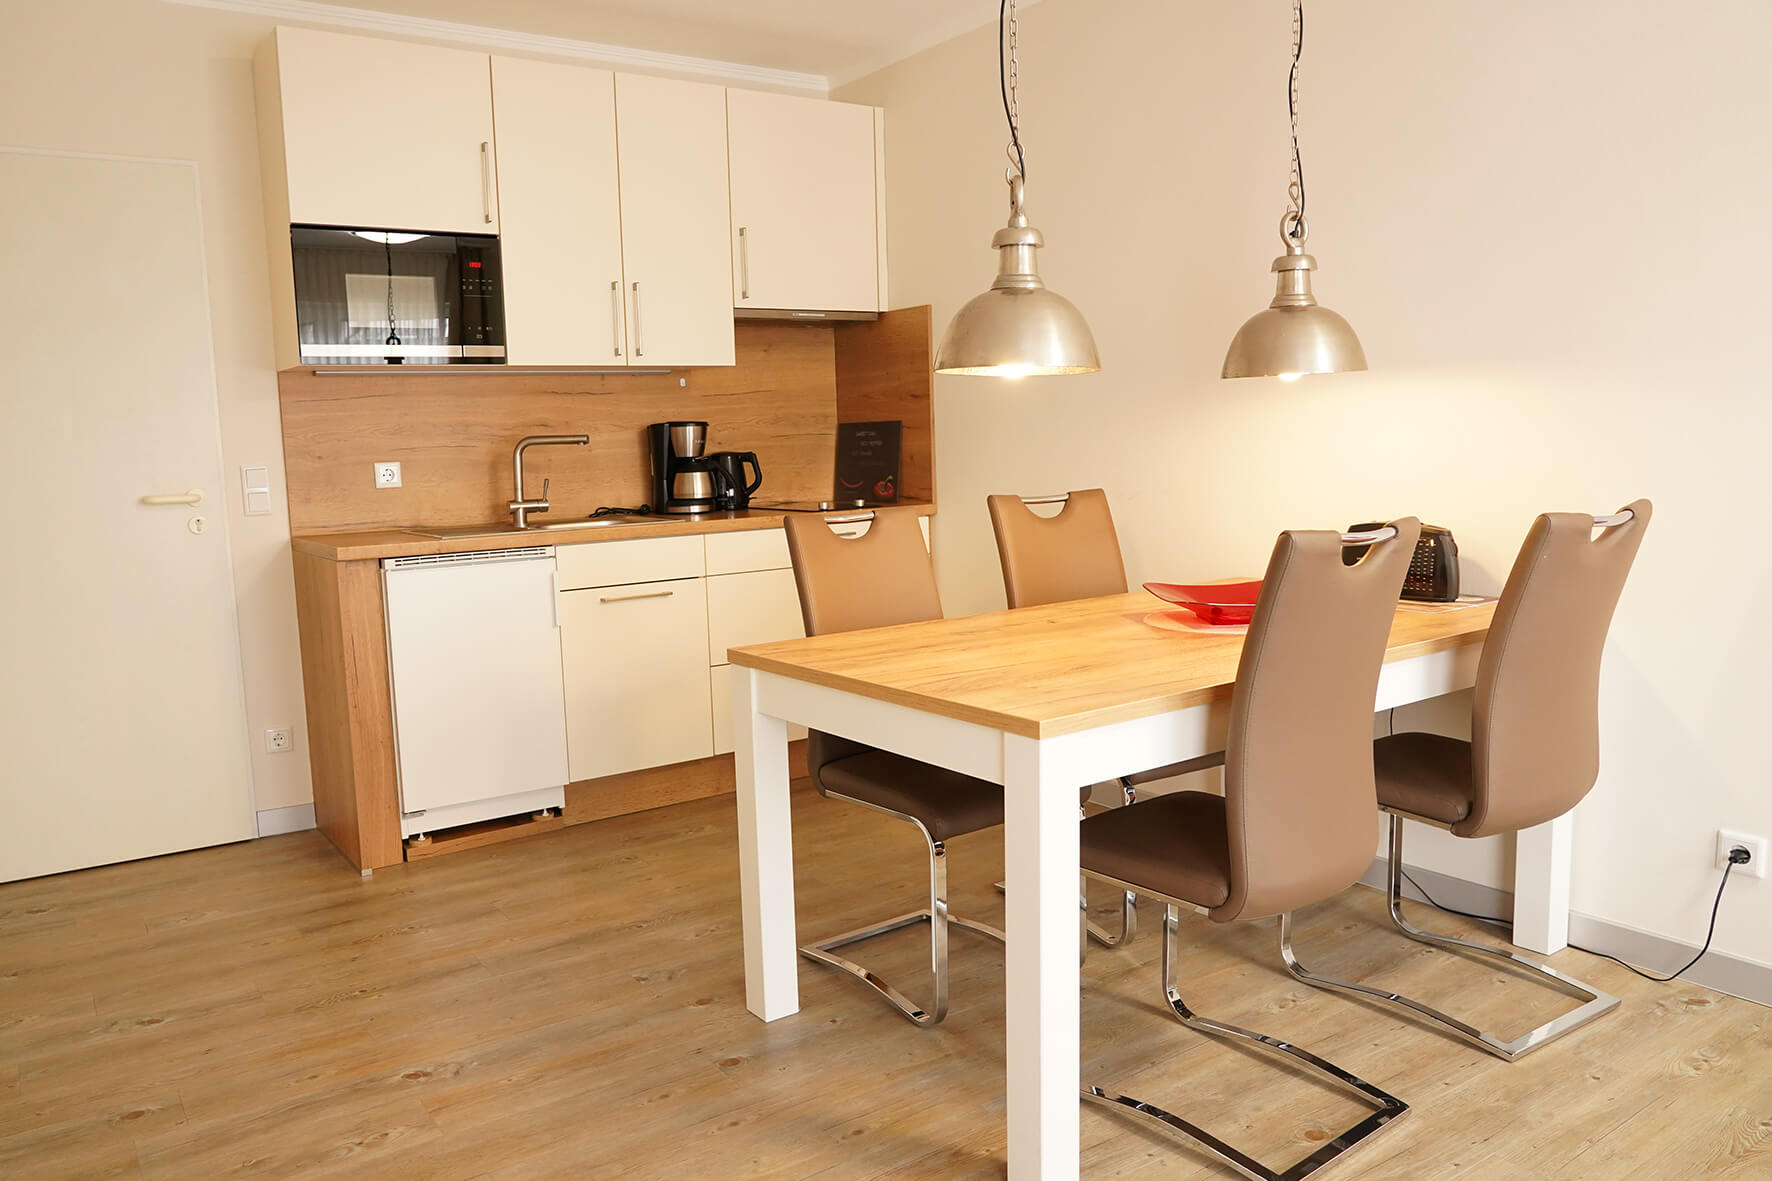 Küchenzeile in cremeweiß mit Holztisch und braunen Lederstühlen an einer weißen Wand